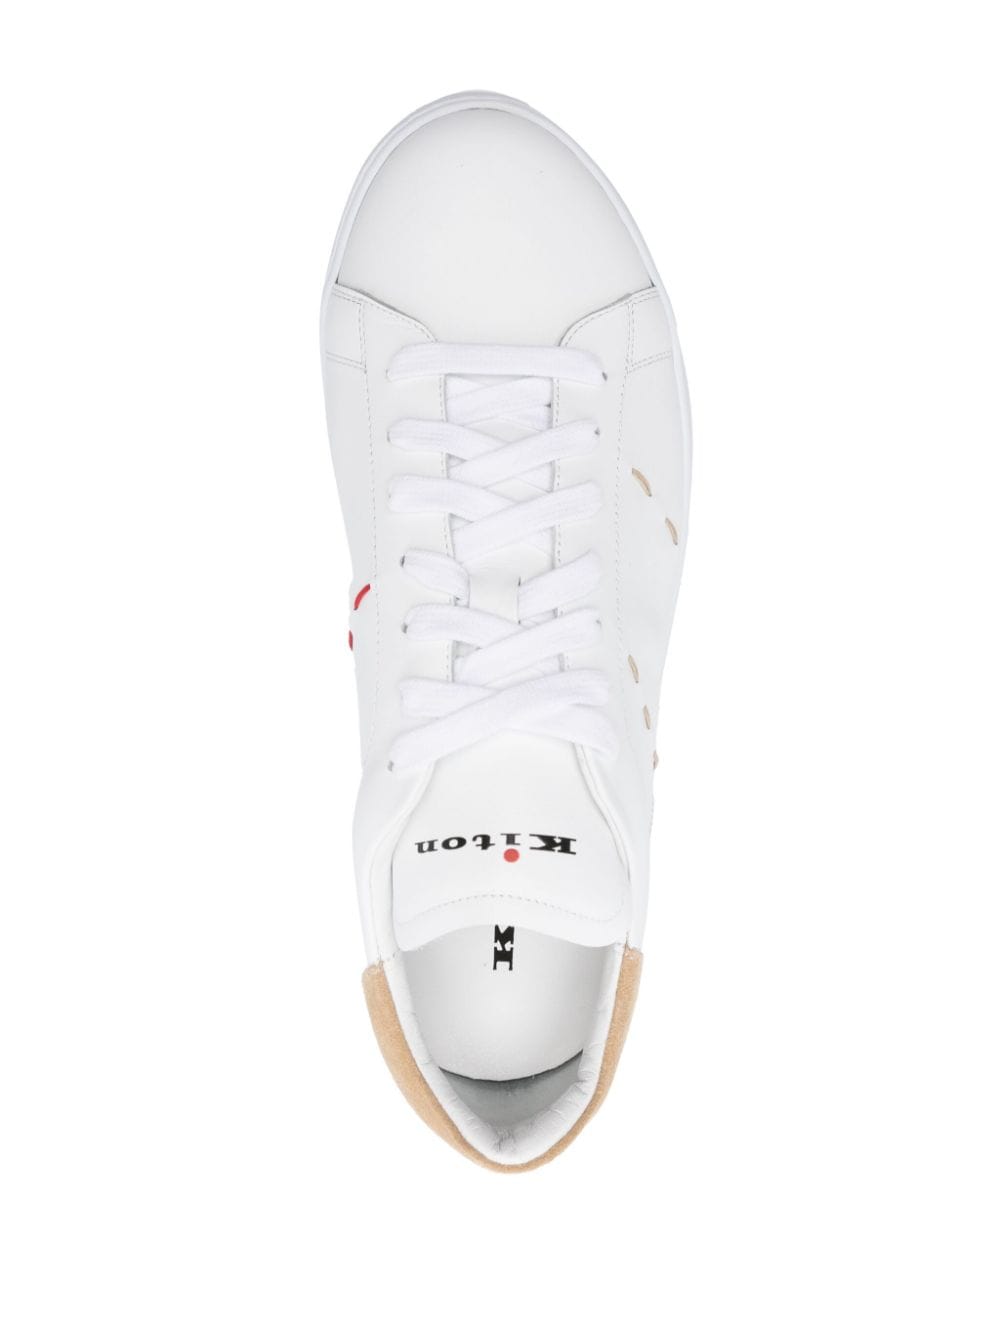 Sneaker en cuir blanc avec détails beiges